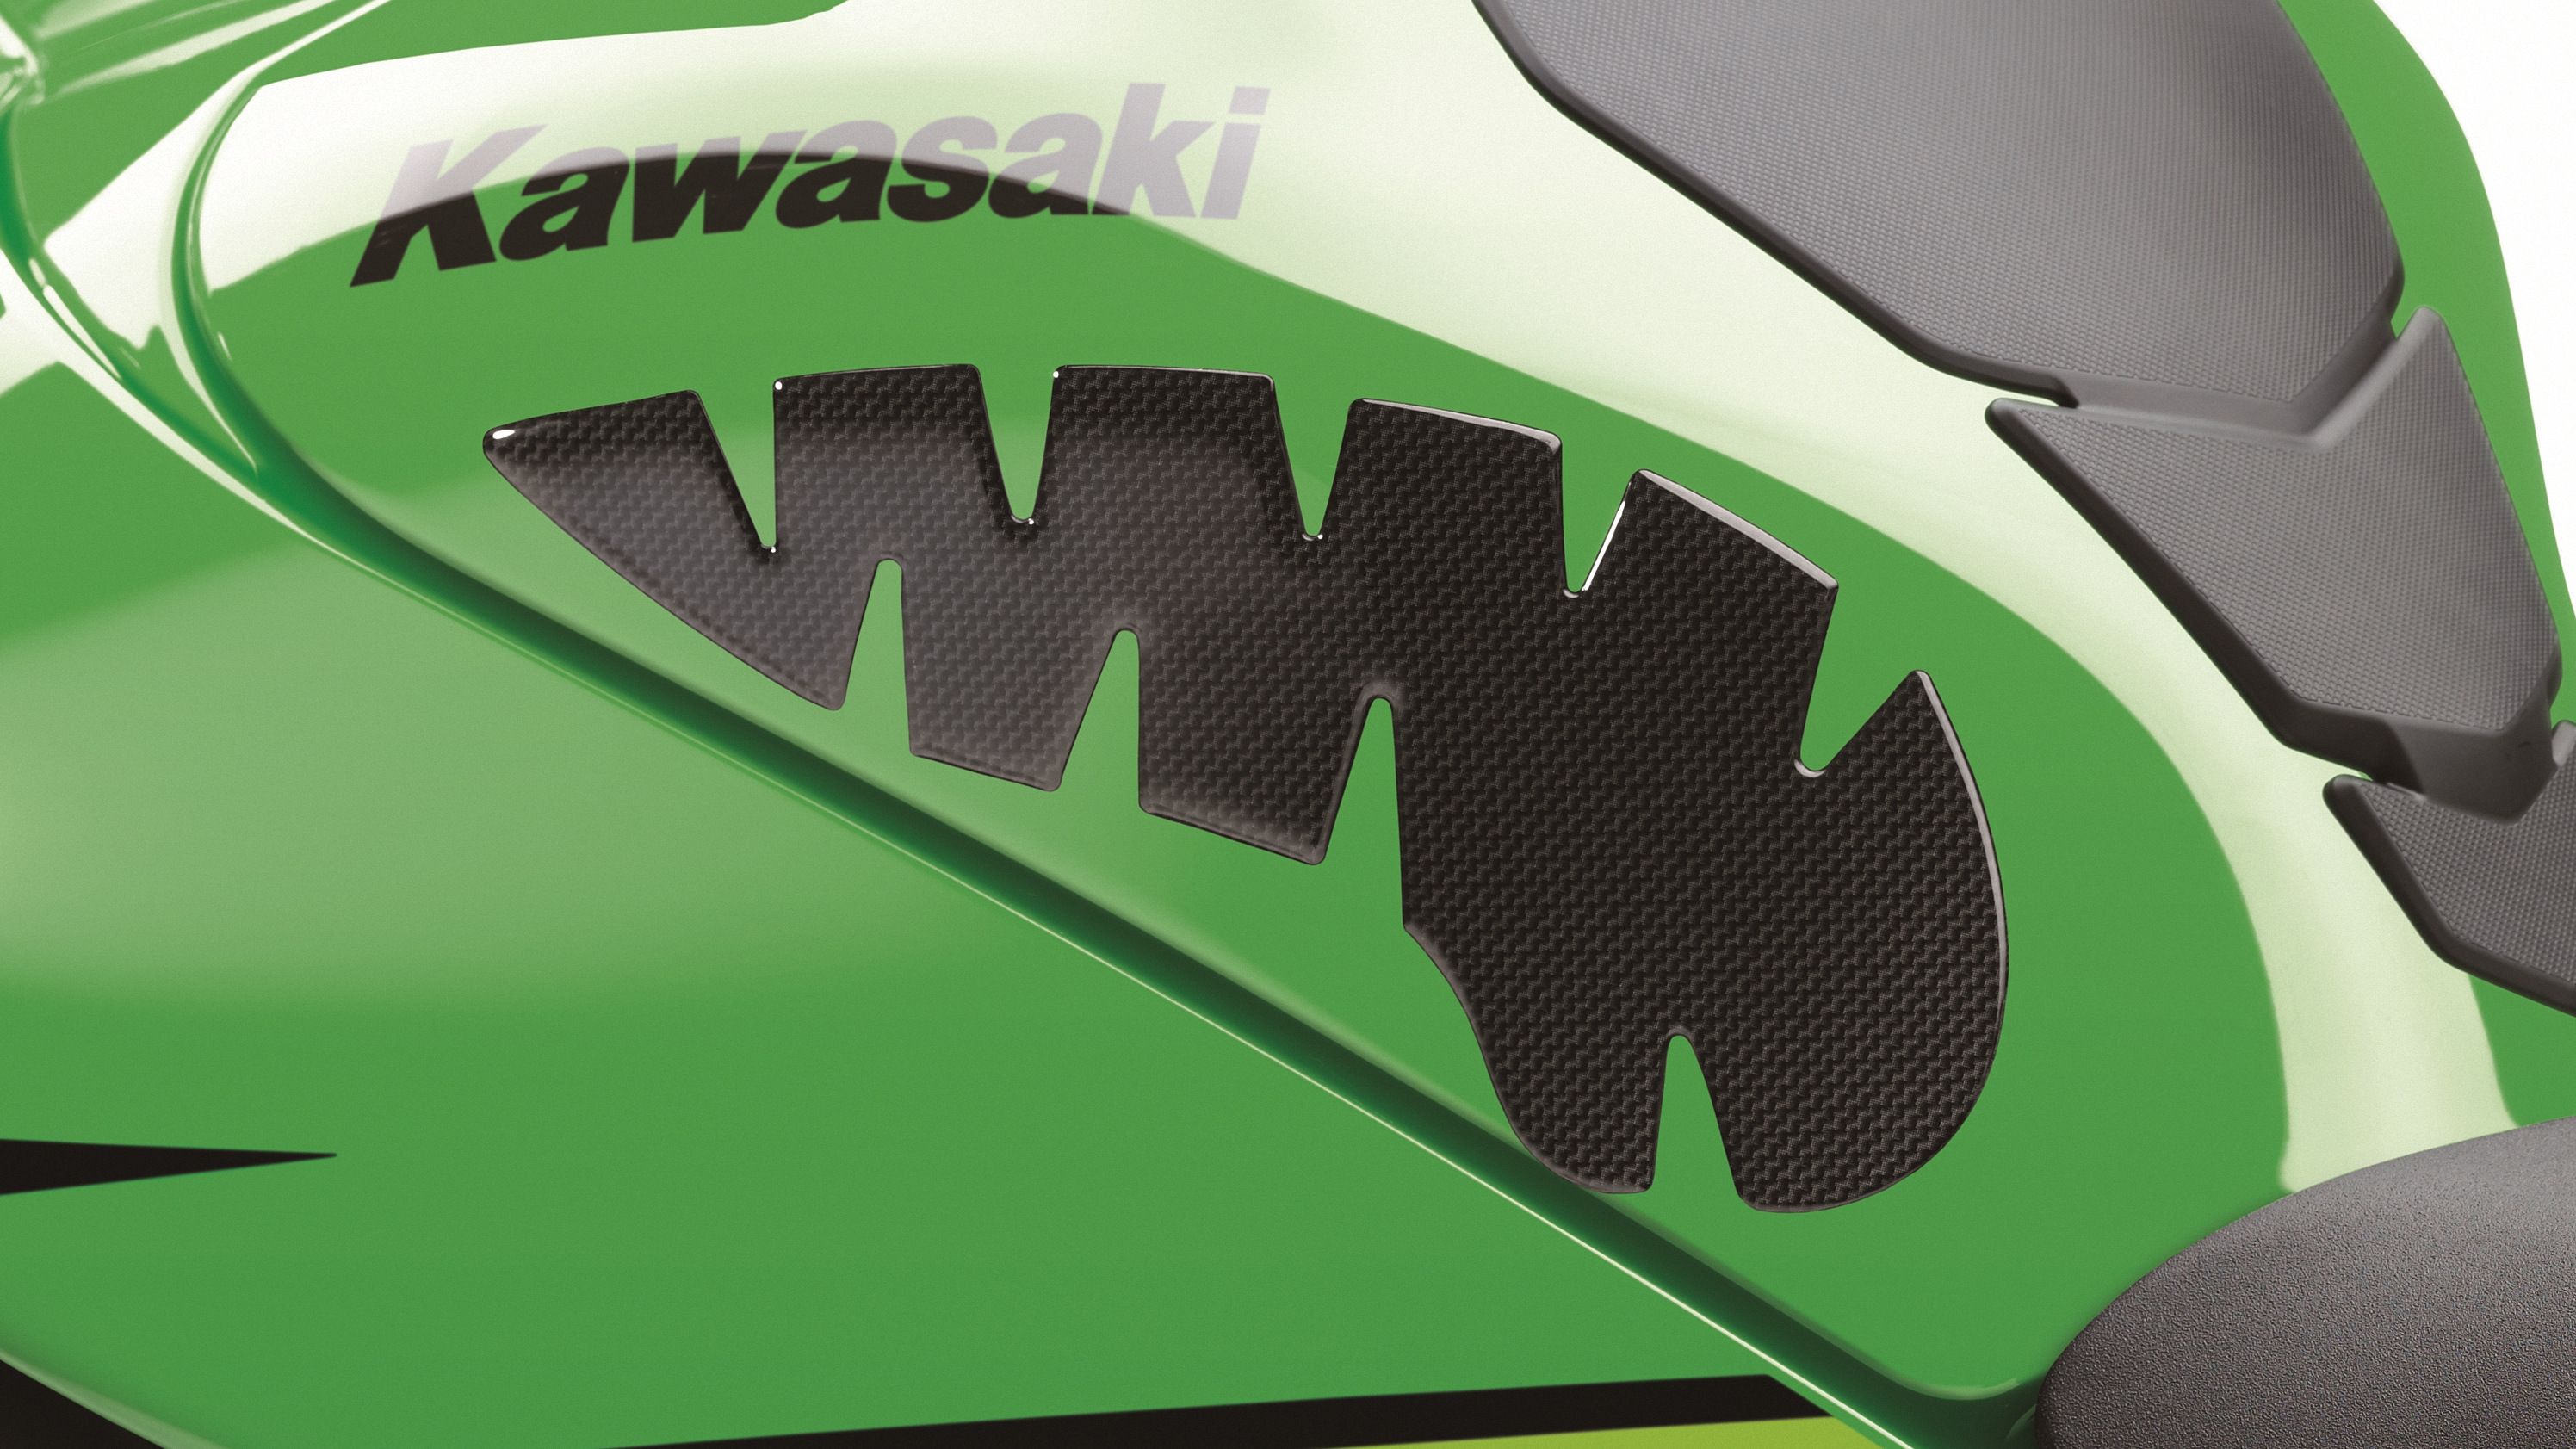 2019 - 2020 Kawasaki Ninja ZX-10R